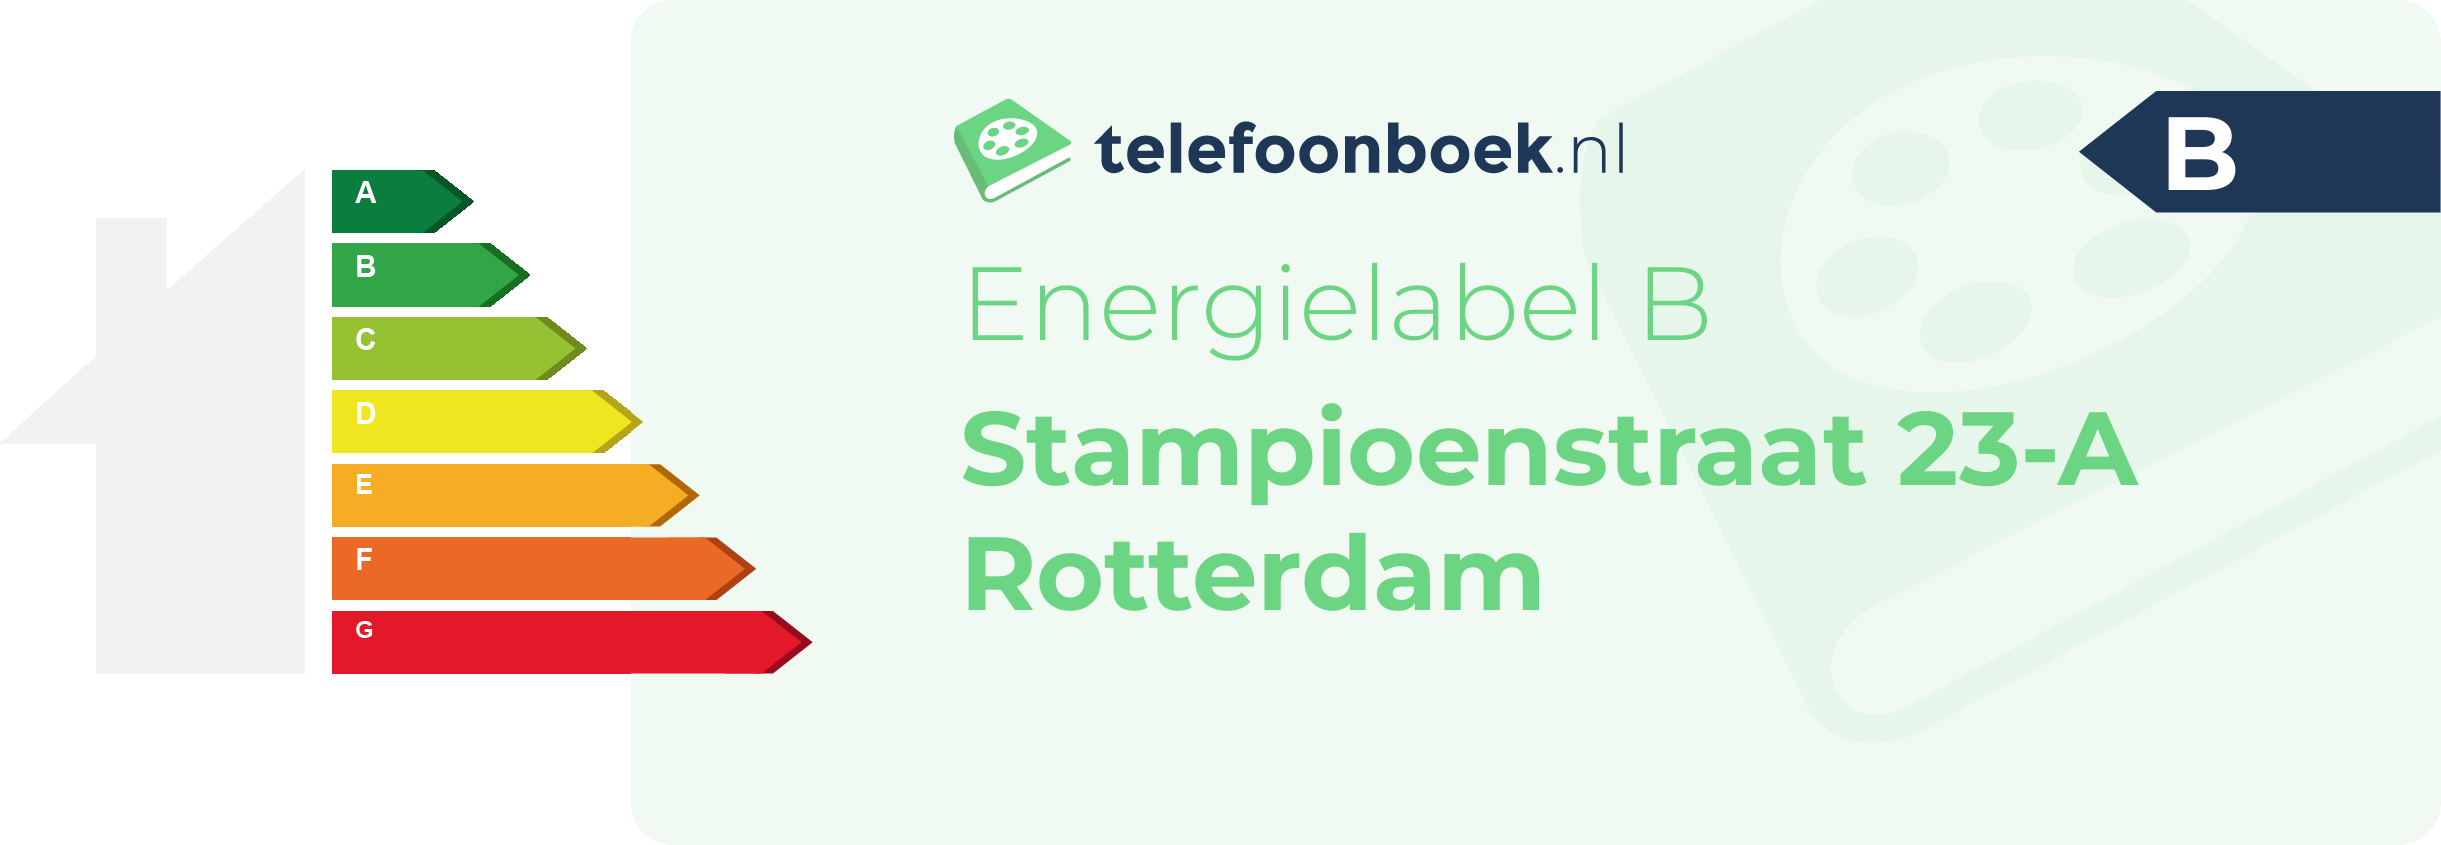 Energielabel Stampioenstraat 23-A Rotterdam